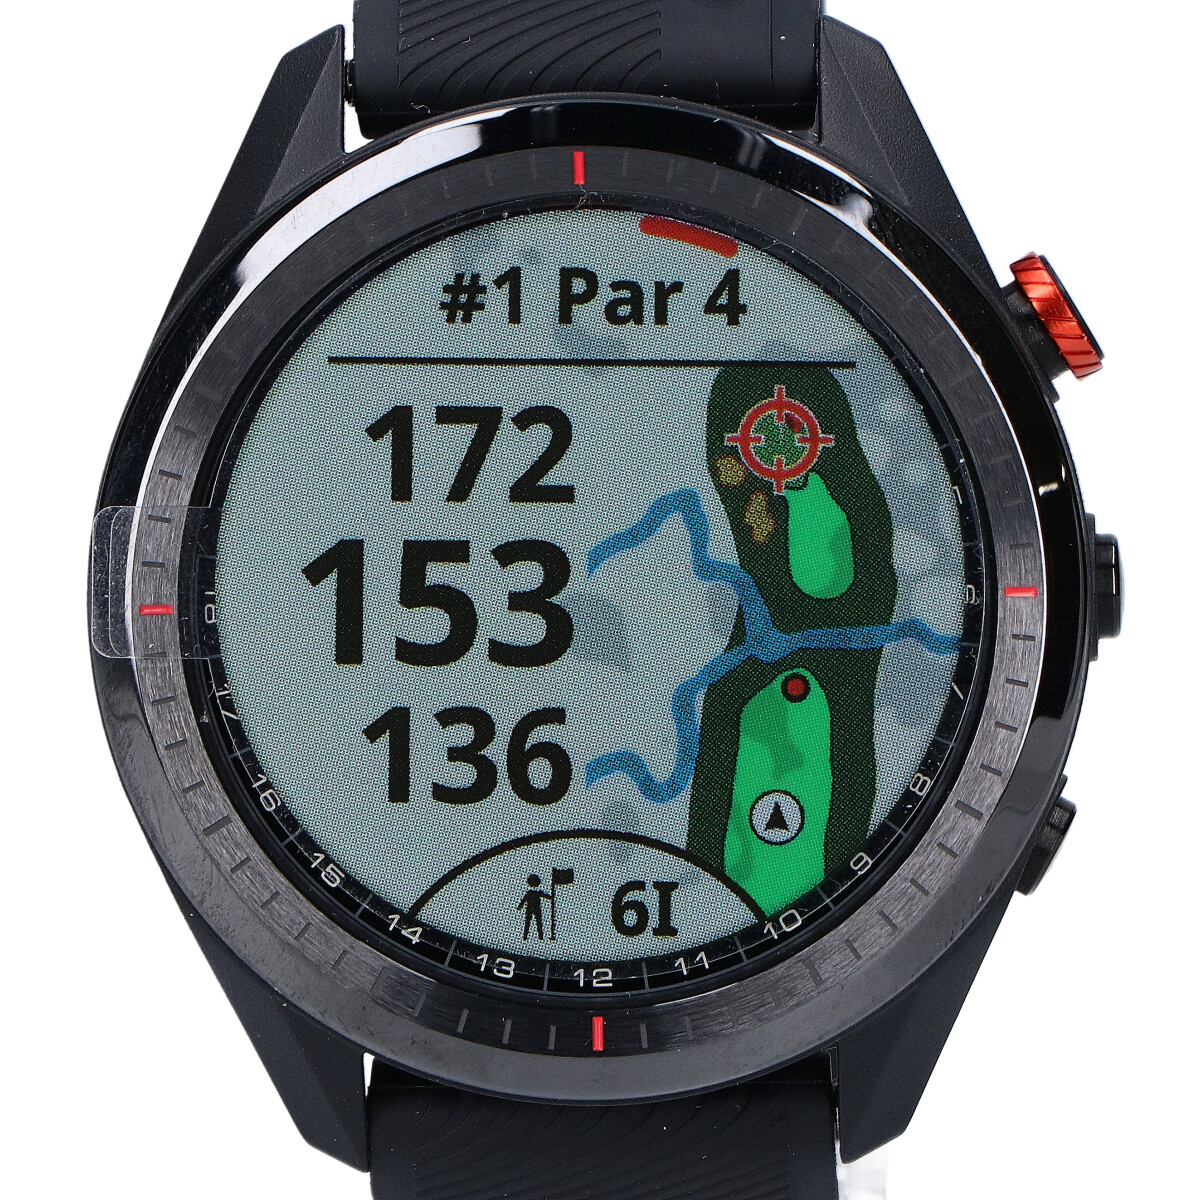 ガーミンの010-02200-20 アプローチS62 GPS ゴルフ スマートウォッチの買取実績です。